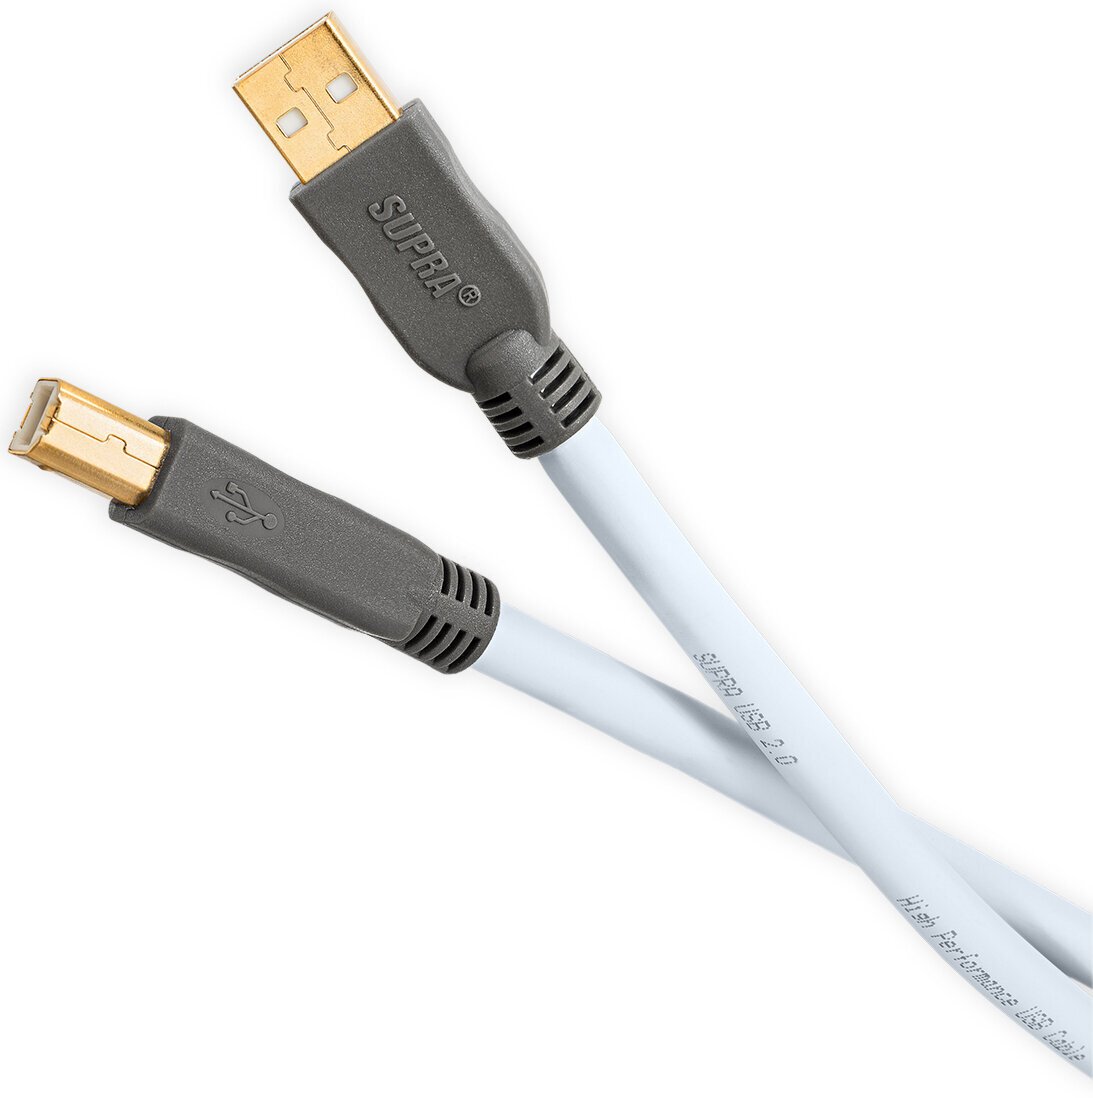 Câble USB Salut-Fi SUPRA Cables USB 2.0 Cable 2 m Bleu Câble USB Salut-Fi